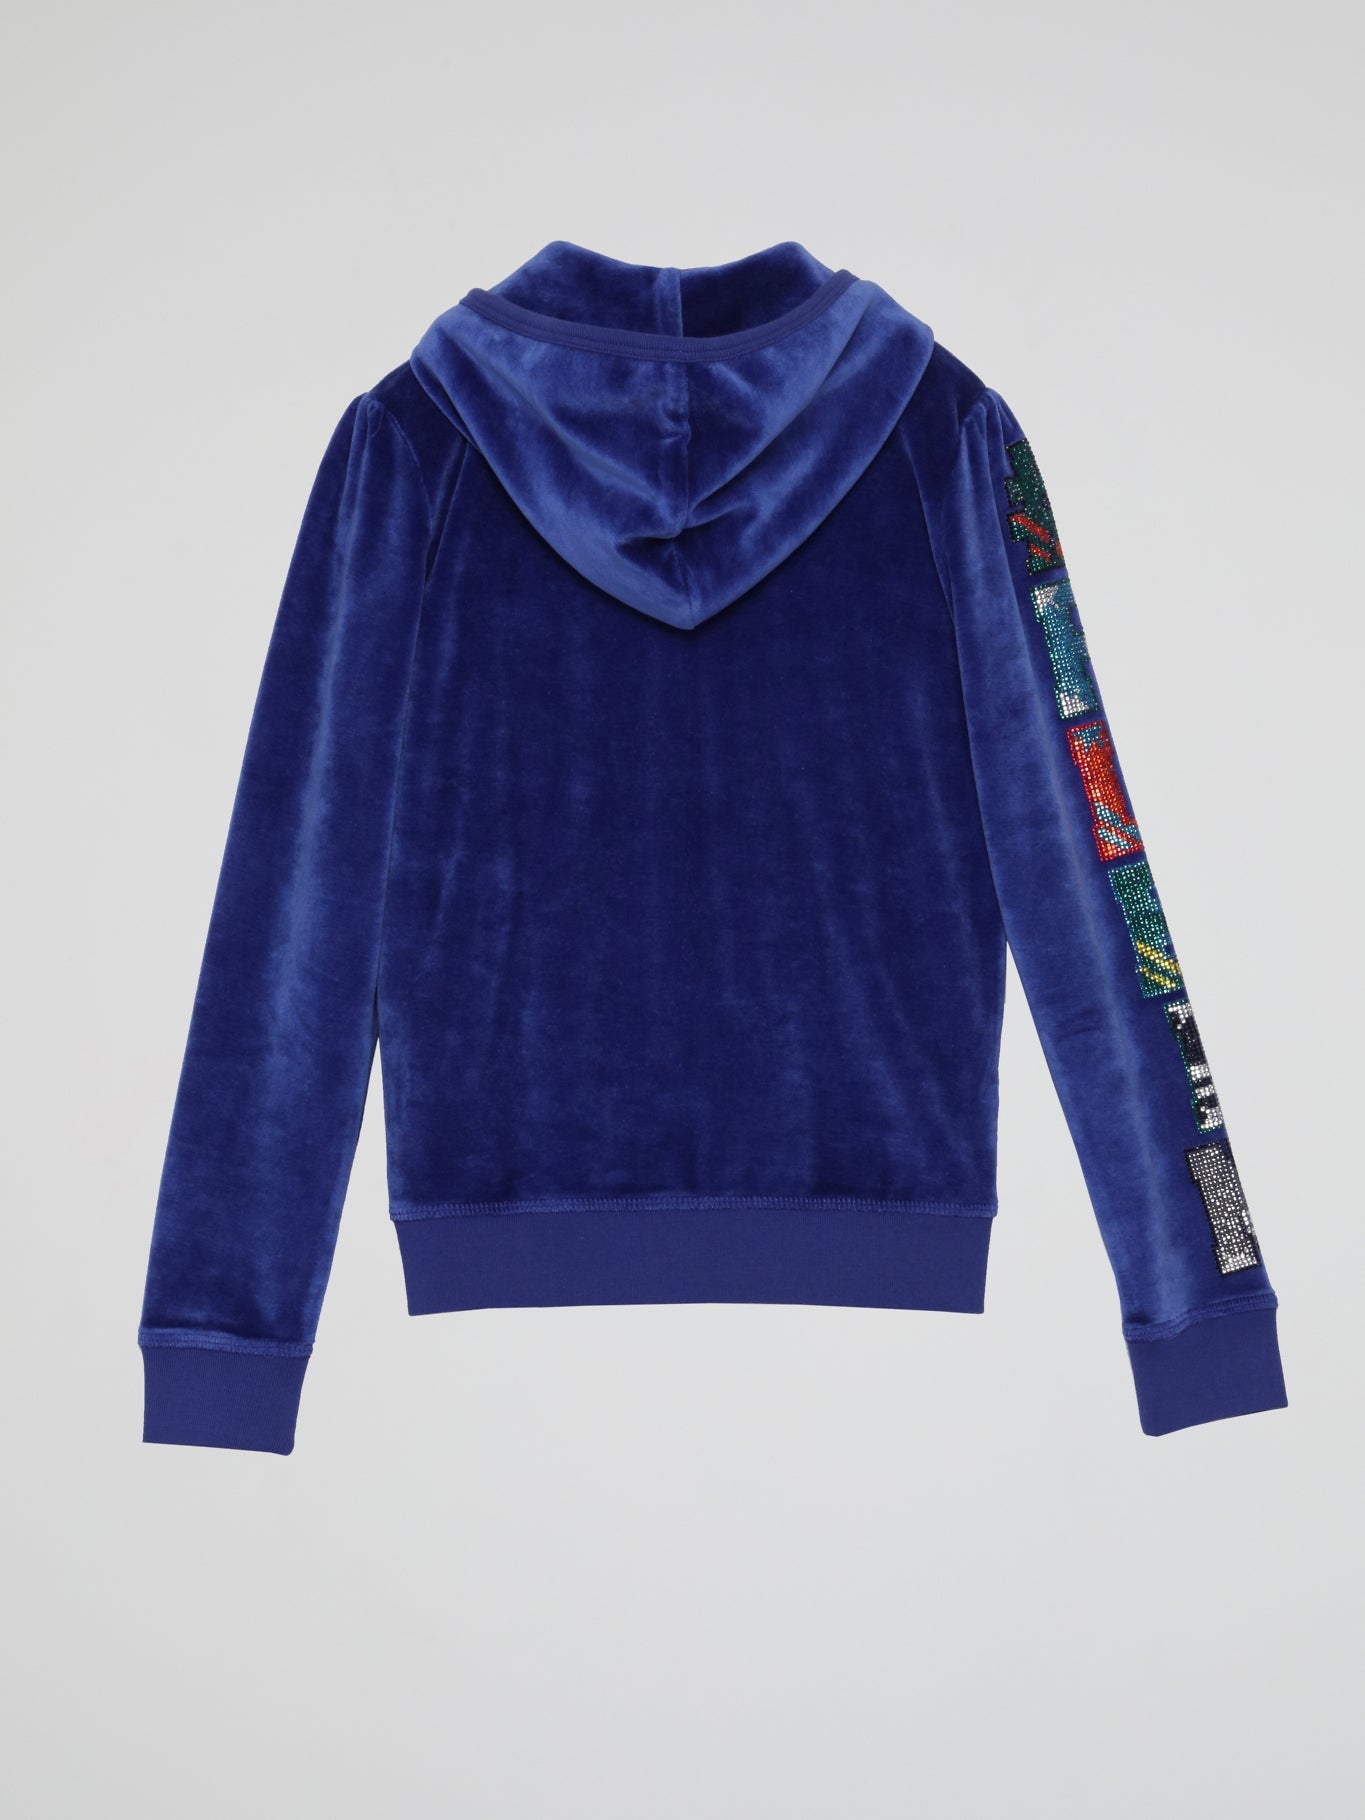 Blue Velvet Sweatshirt (Kids)